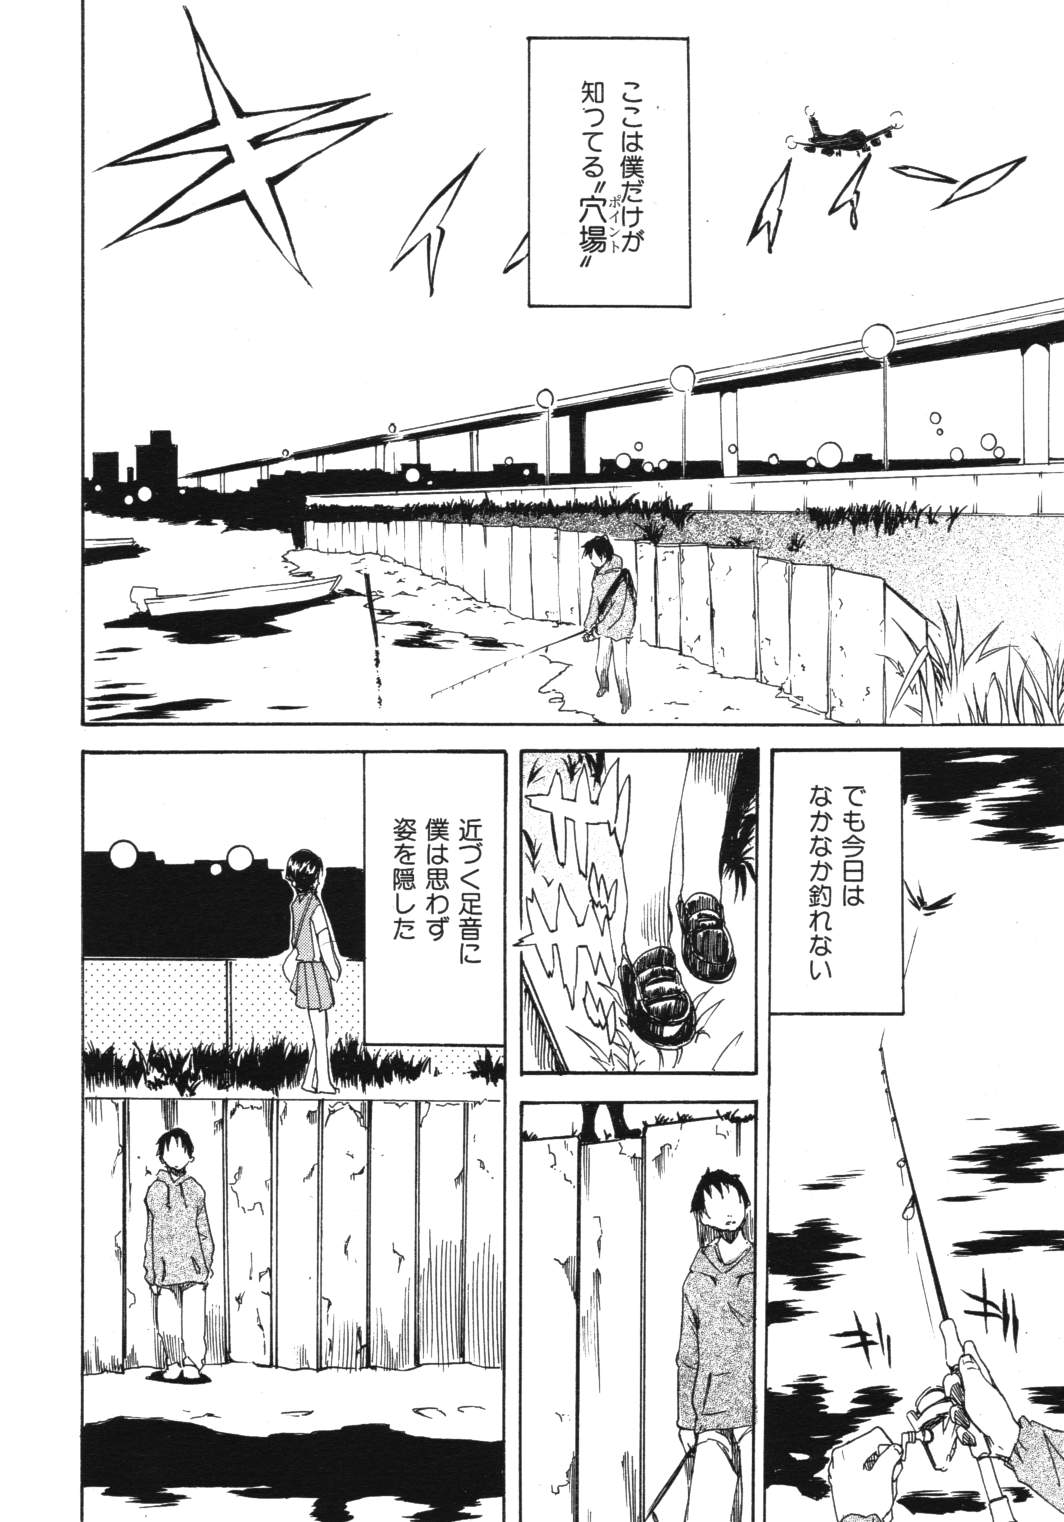 [2006.12.15]Comic Kairakuten Beast Volume 14 